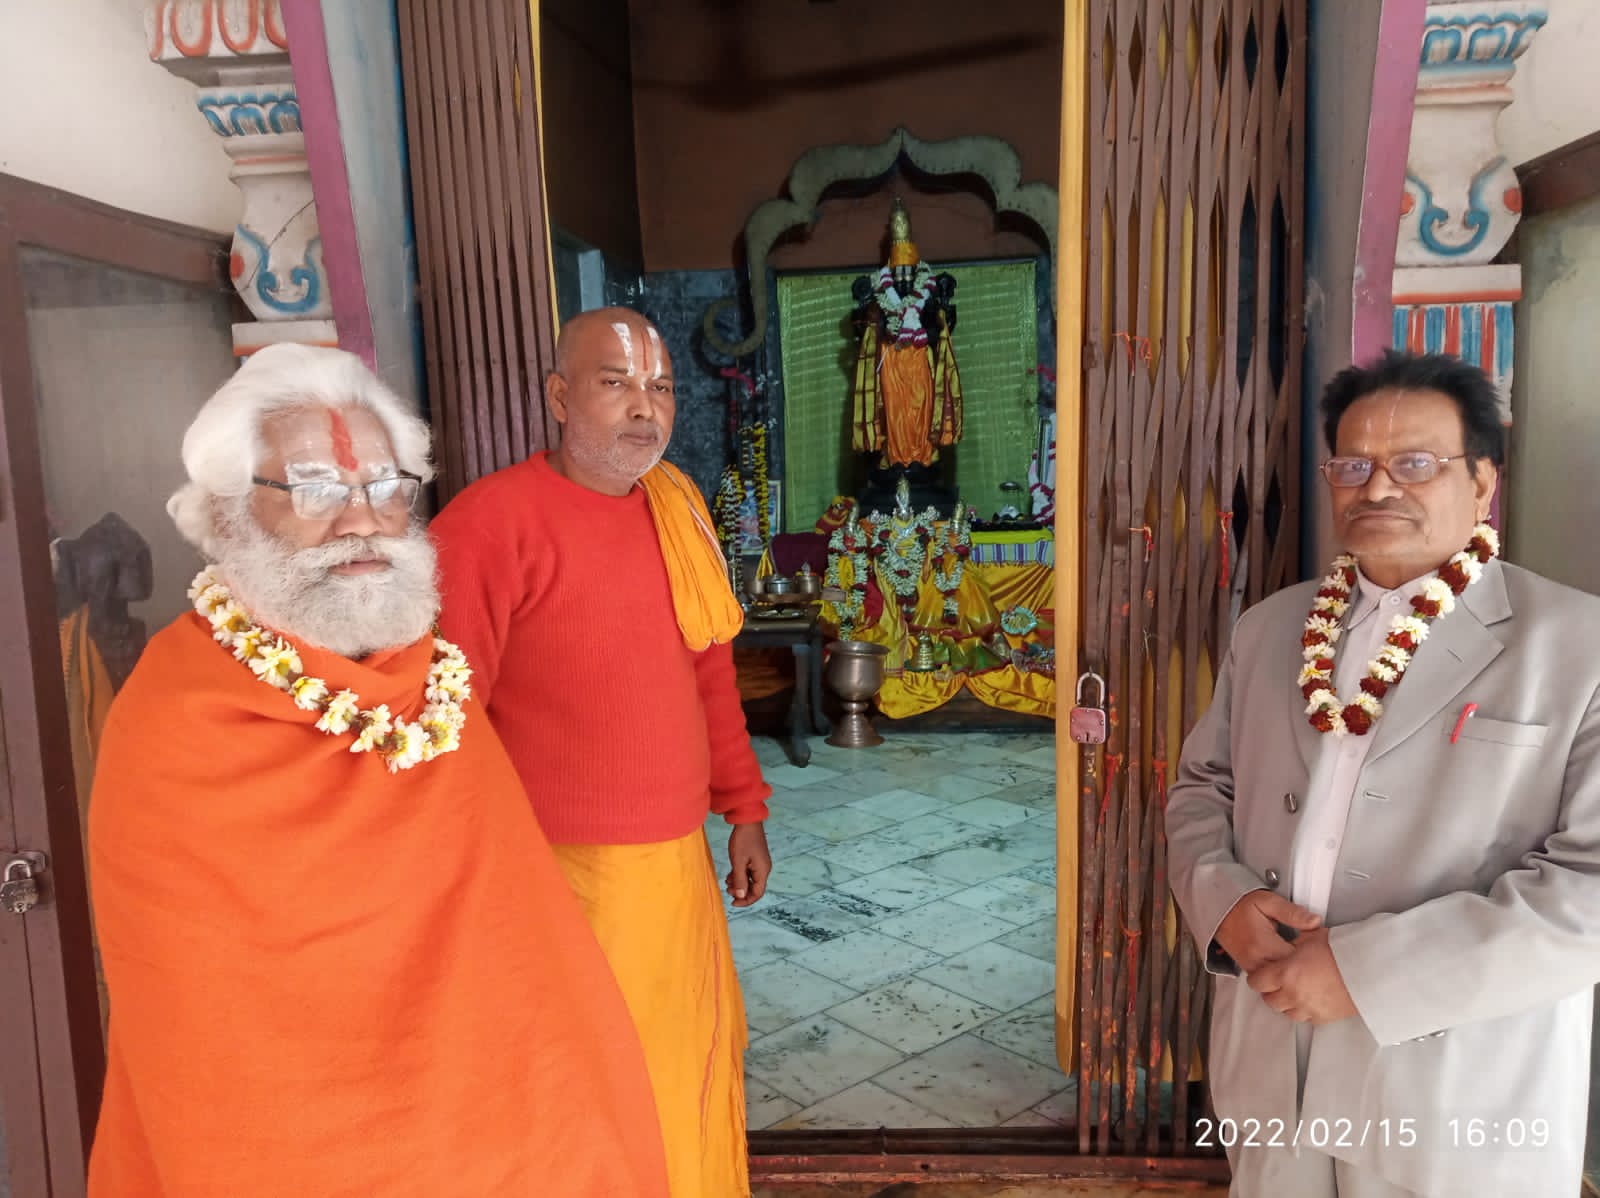 23 वाँ श्रीब्रह्मोत्सव सह श्रीलक्ष्मी नारायण महायज्ञ का पांचवा दिन- सोनपुर